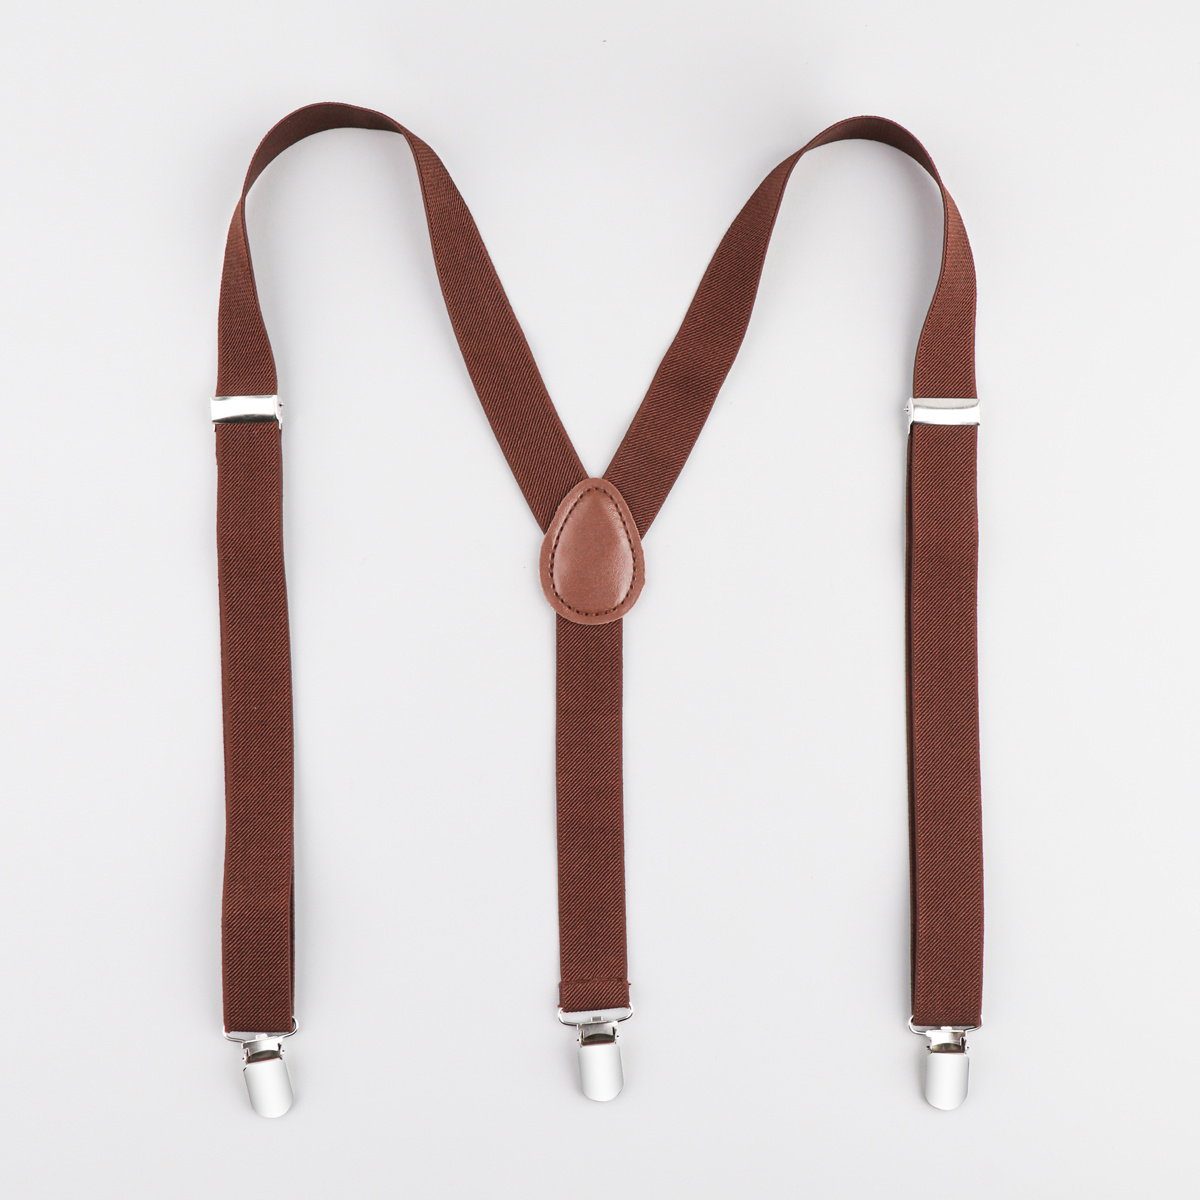 Mua MENDENG Adjustable Suspenders for Men Bronze Metal Clips